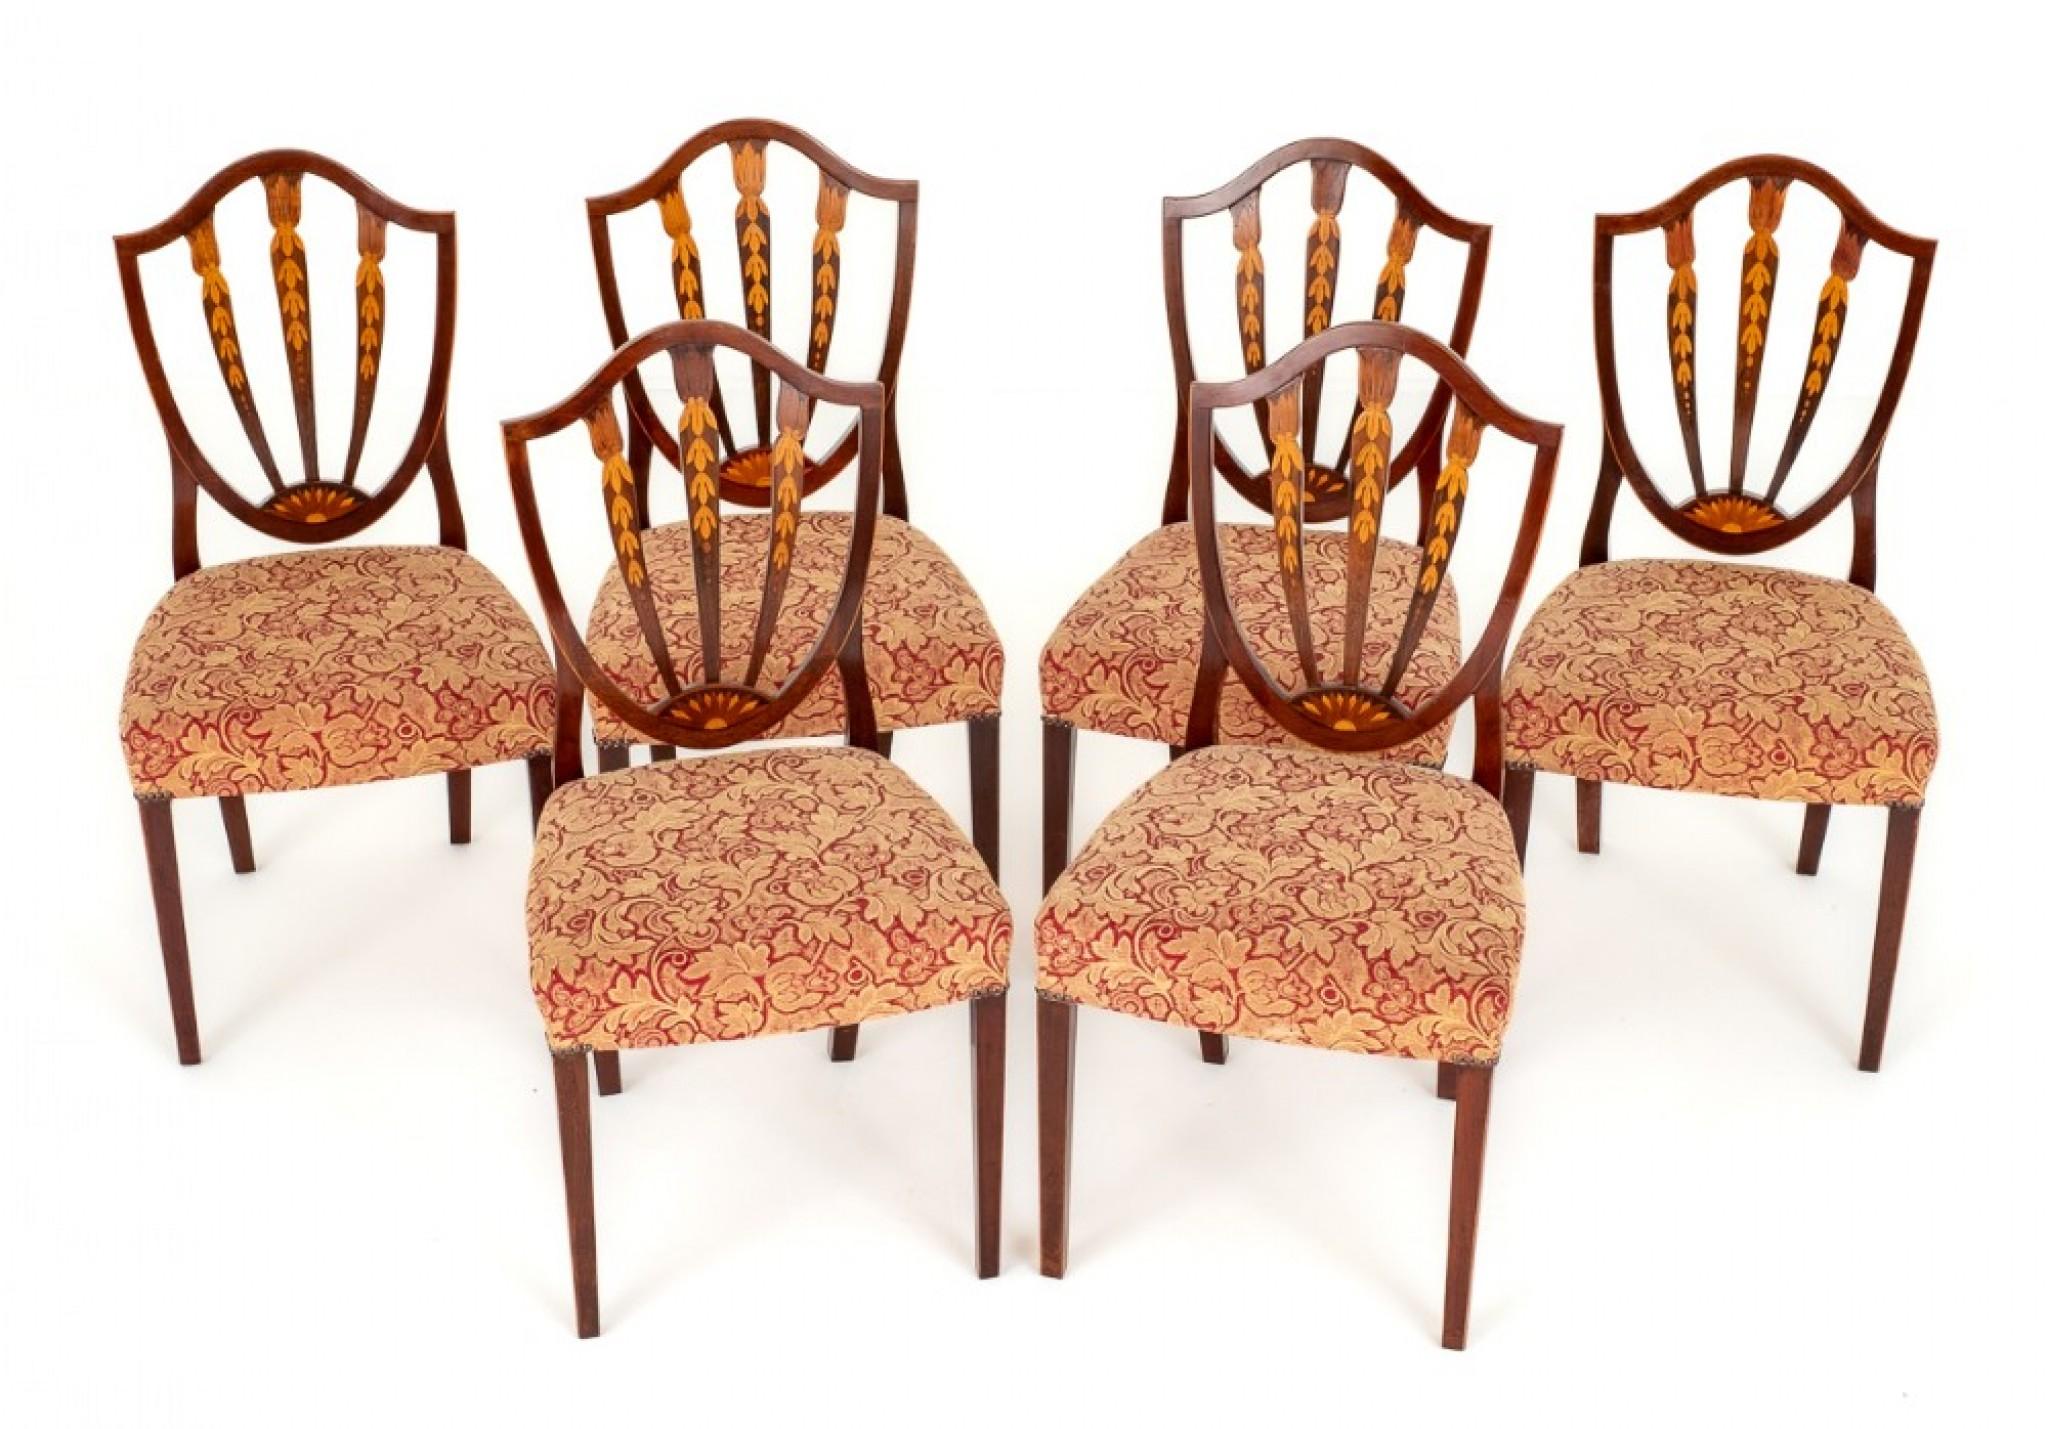 Satz von 6 Mahagoni Stühlen mit Intarsien im Hepplewhite Stil.
Diese ziemlich hübschen Stühle stehen auf konischen Beinen.
Die Sitze sind von einer Stuff Over Form (sehr bequem)
Die Rückenlehnen der Stühle haben die Form eines Schildes und sind mit